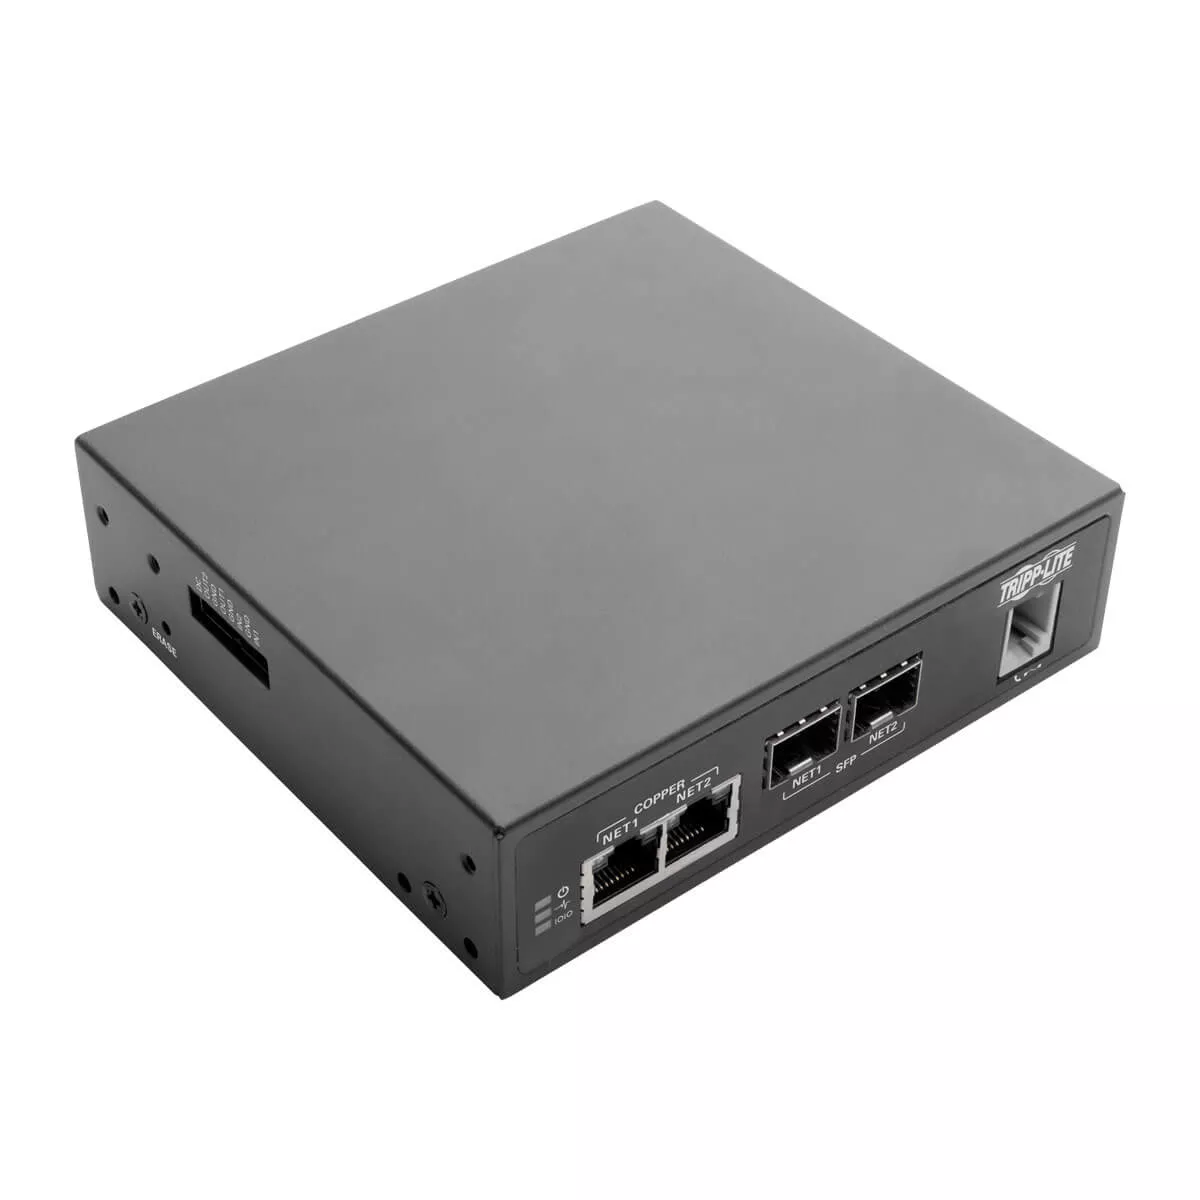 Achat EATON TRIPPLITE 8-Port Console Server with Built-In Modem au meilleur prix